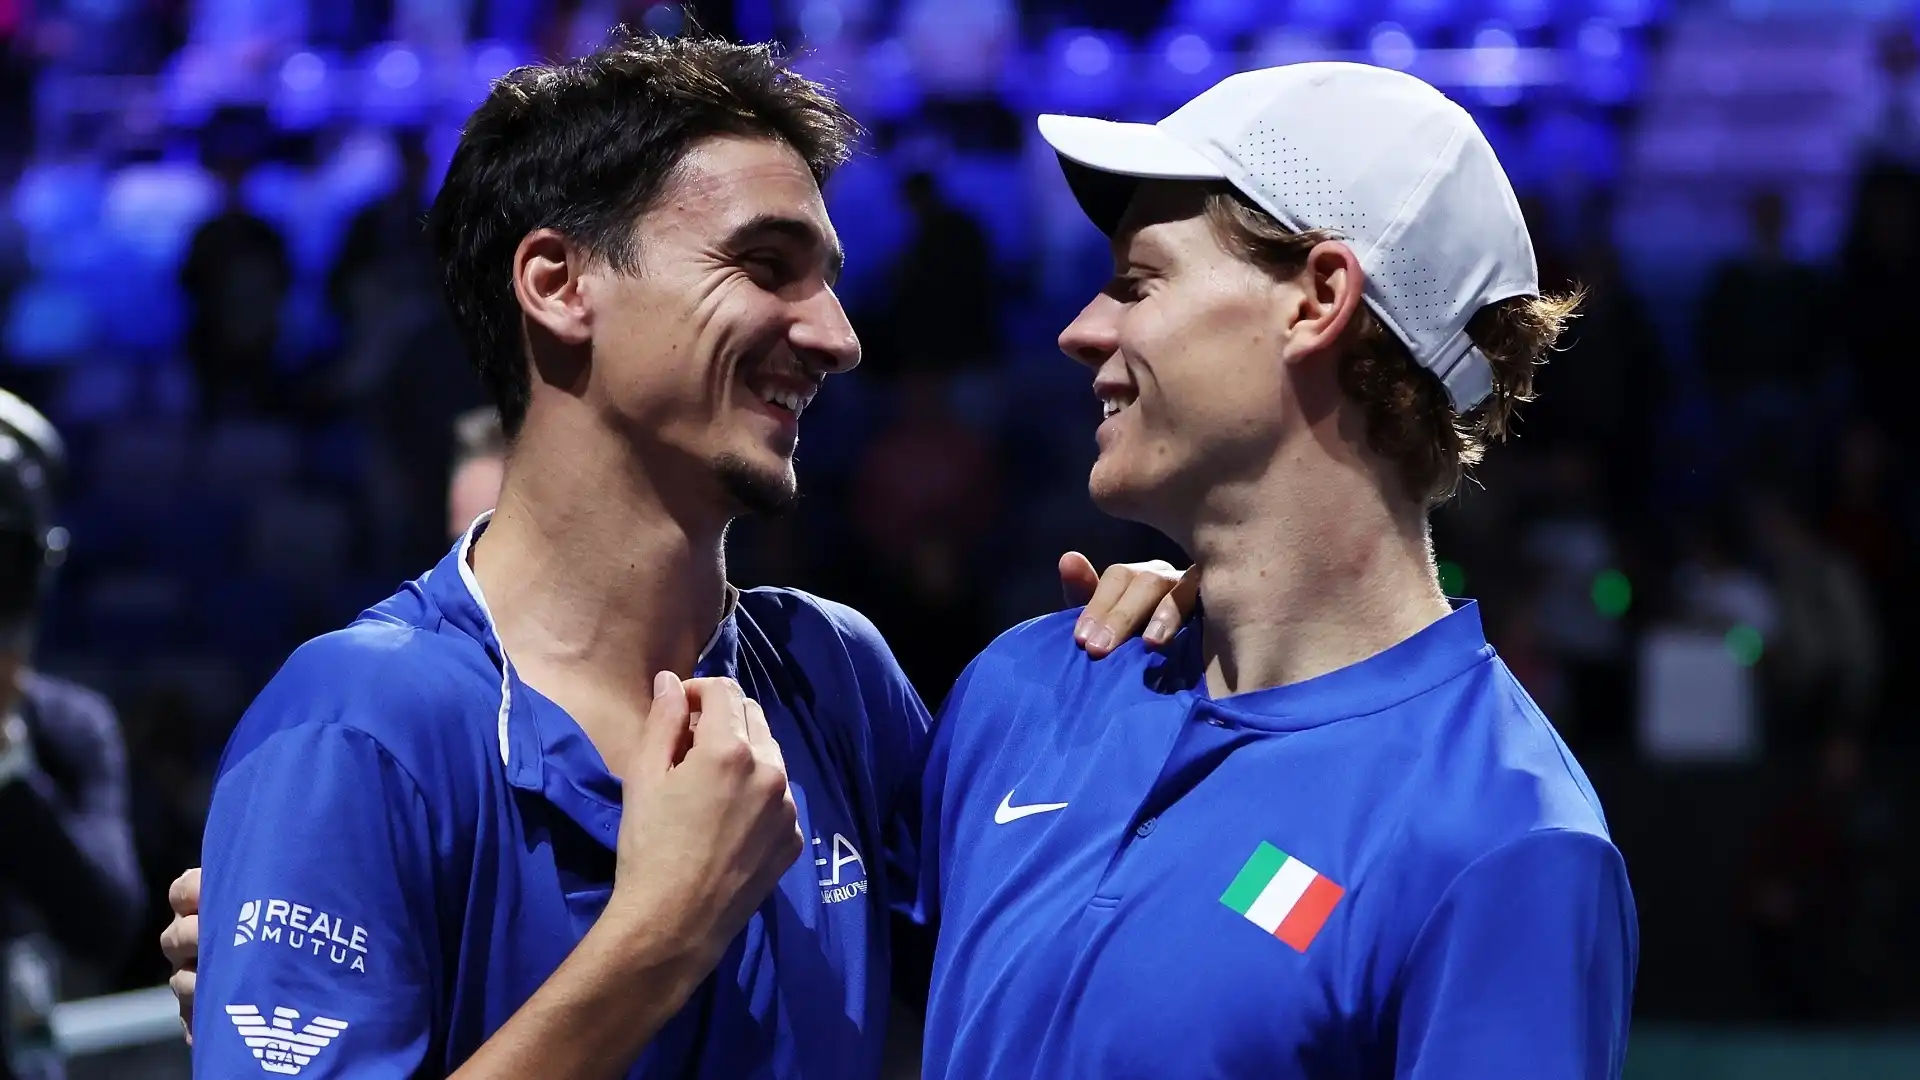 Coppa Davis, i precedenti tra Italia e Australia: c’è un tabù da sfatare